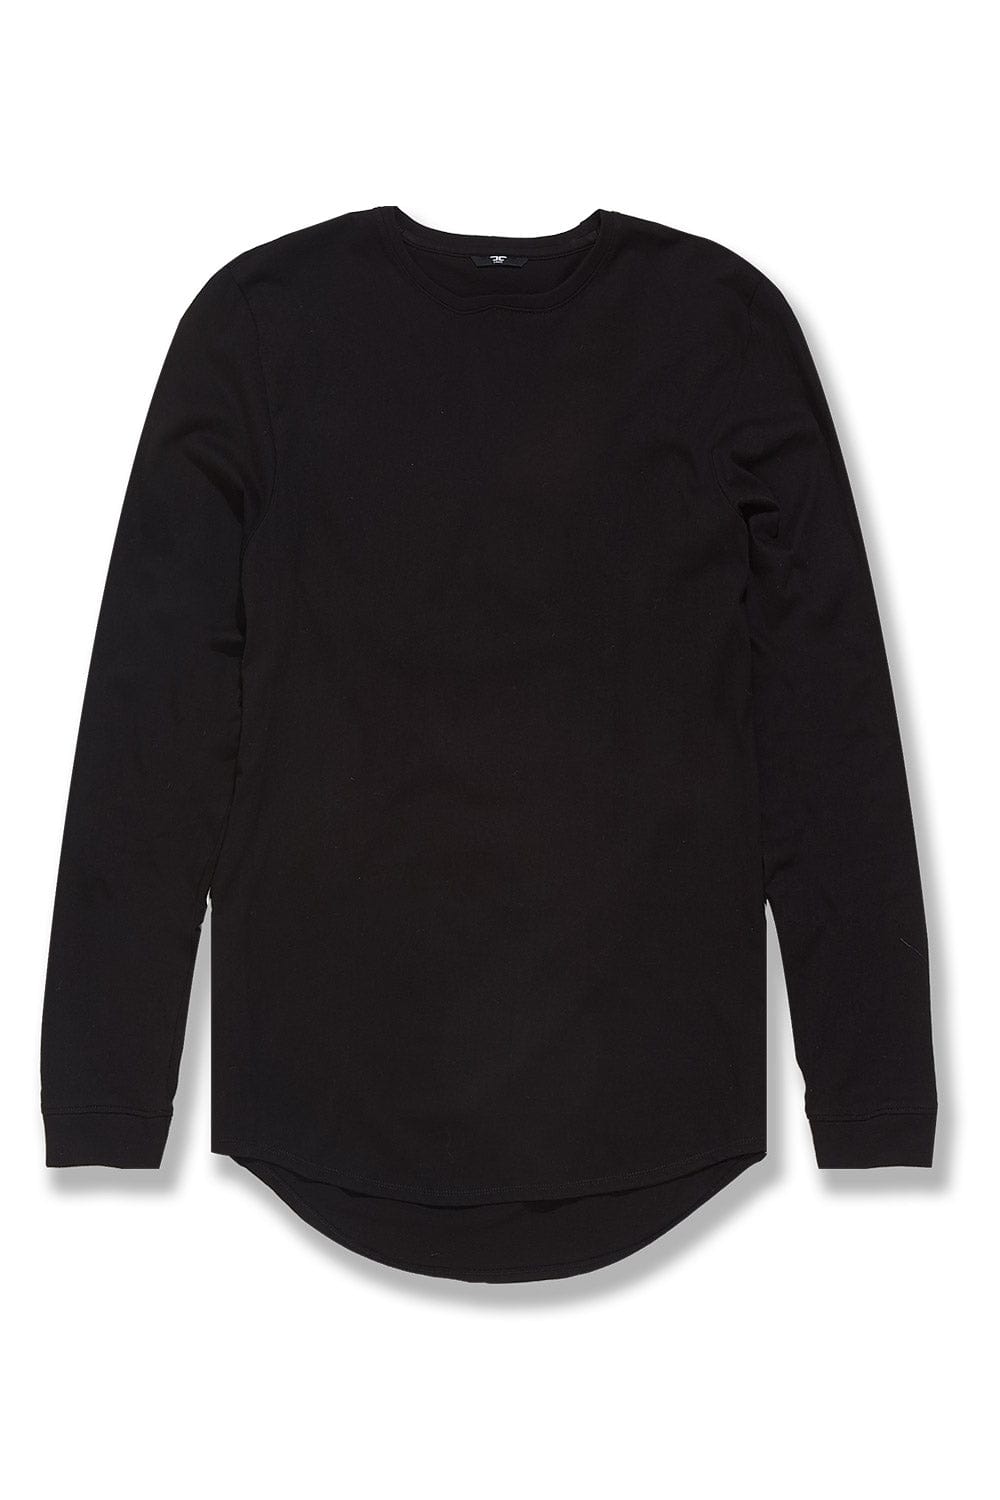 Jordan Craig Stockpile L/S T-Shirt (Black) Black / S